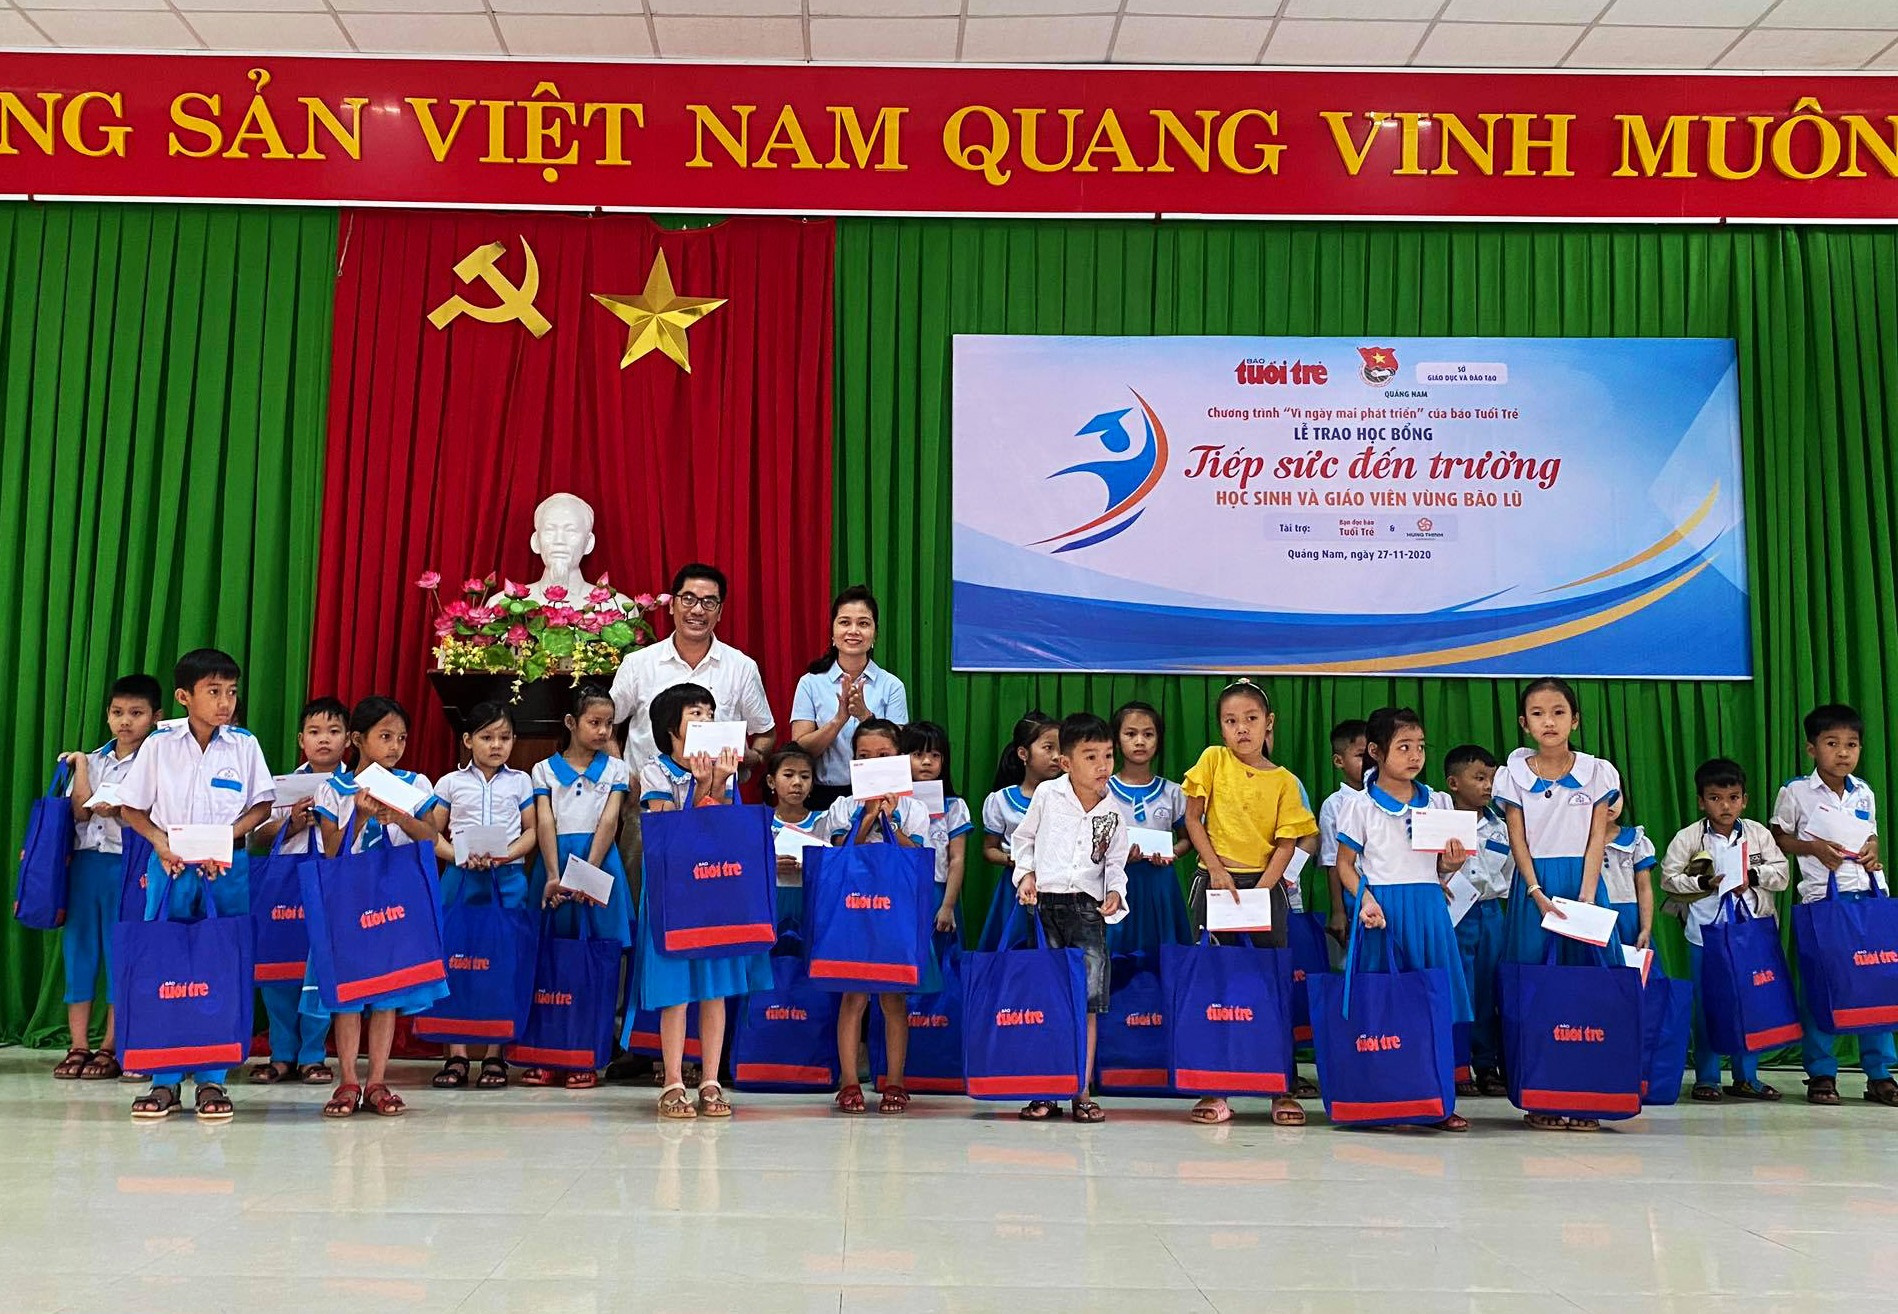 Chương trình trao học bổng “Tiếp sức đến trường cho học sinh và giáo viên vùng bão lũ” tại xã Tam Lãnh (huyện Phú Ninh). Ảnh: PHAN TUẤN